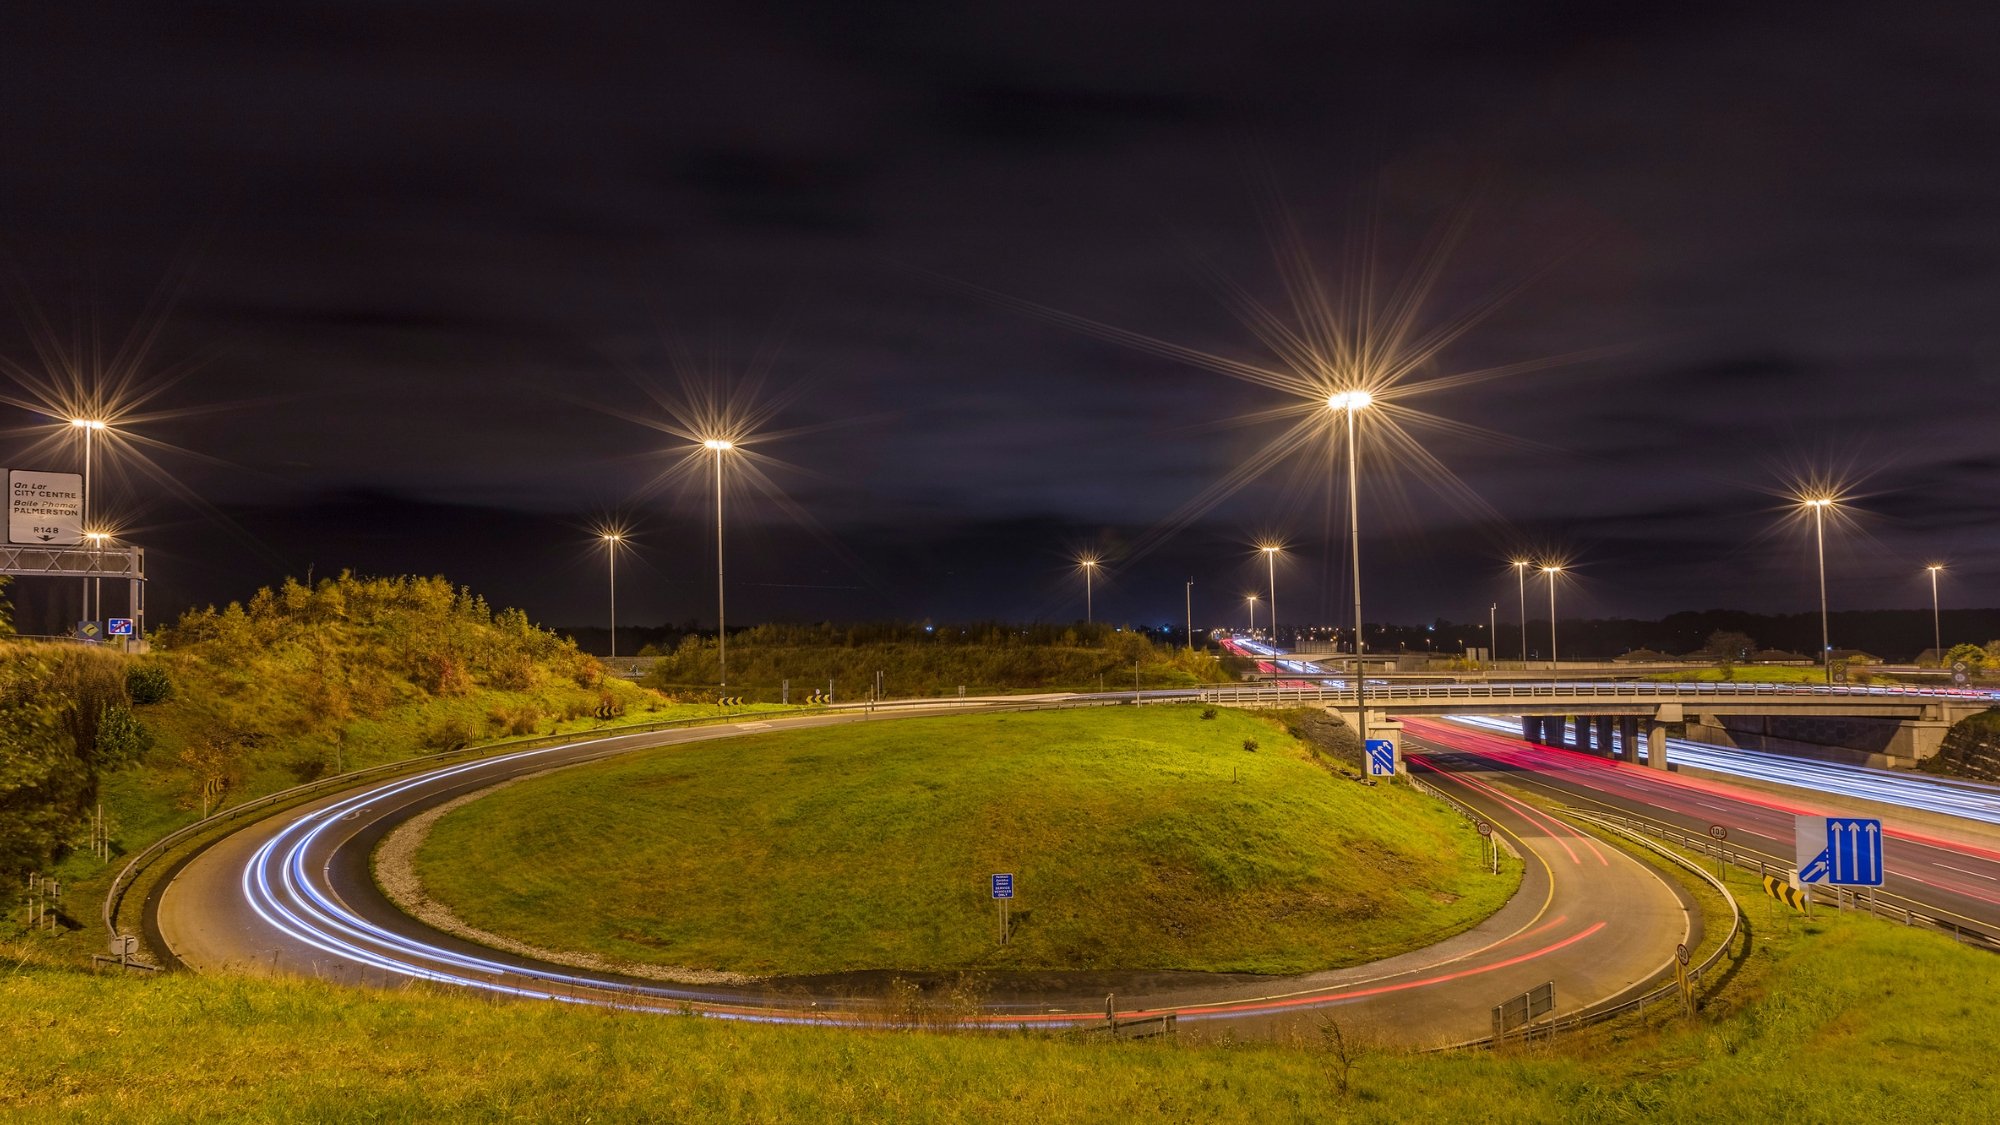 Ramp onto M50 motorway at night.